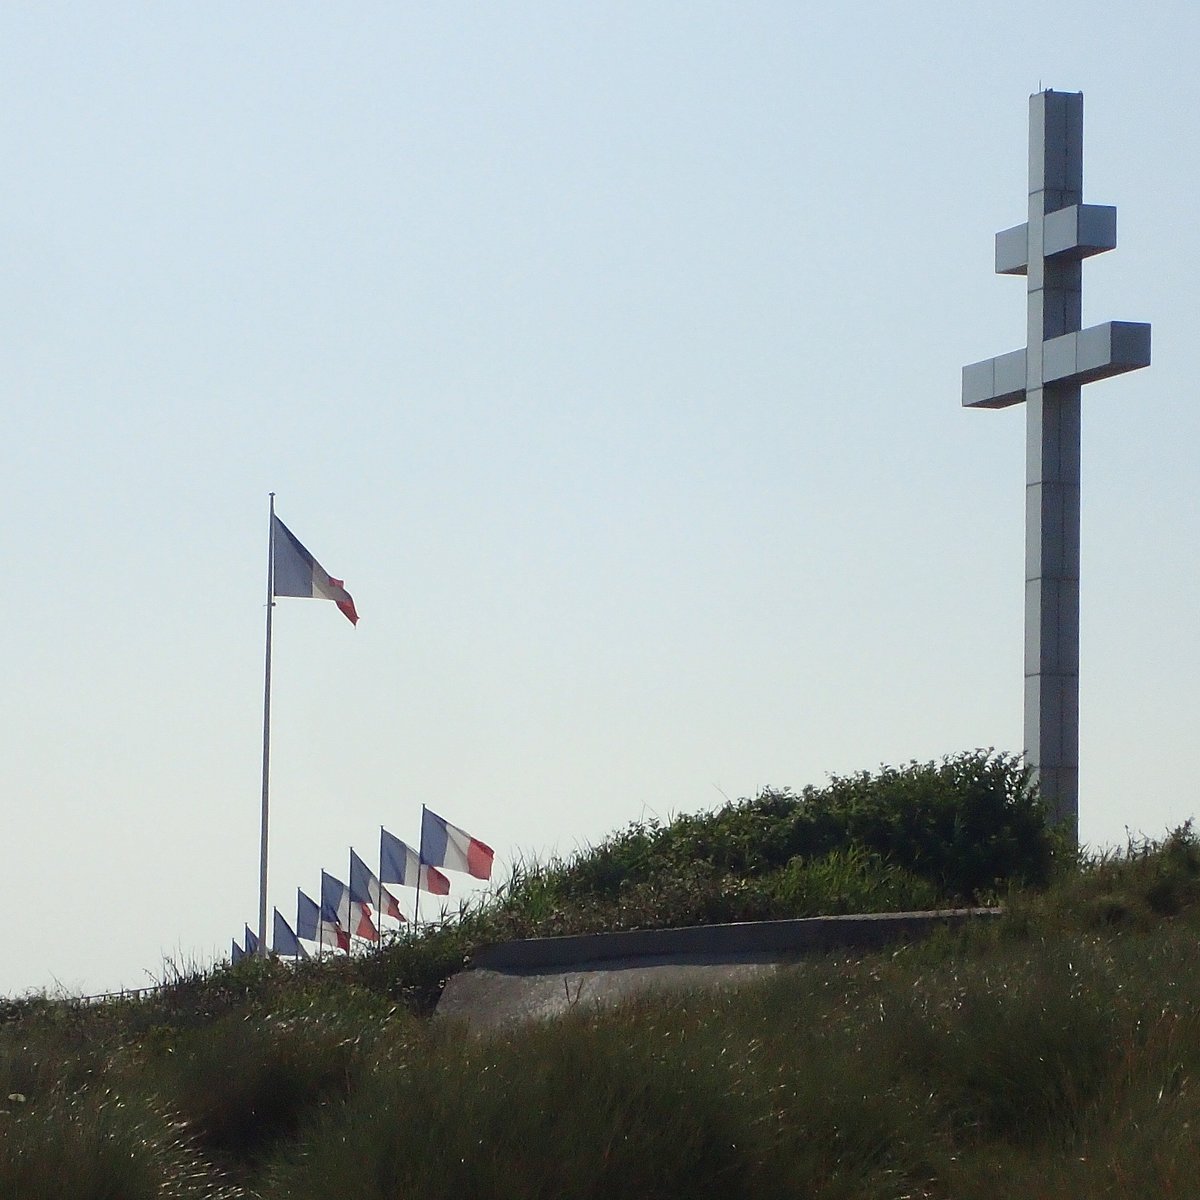 La croix de Lorraine du rivage de Graye/Courseulles, un phare pour les  voyageurs en quête de sens - Fidélité Gaulliste Normandie